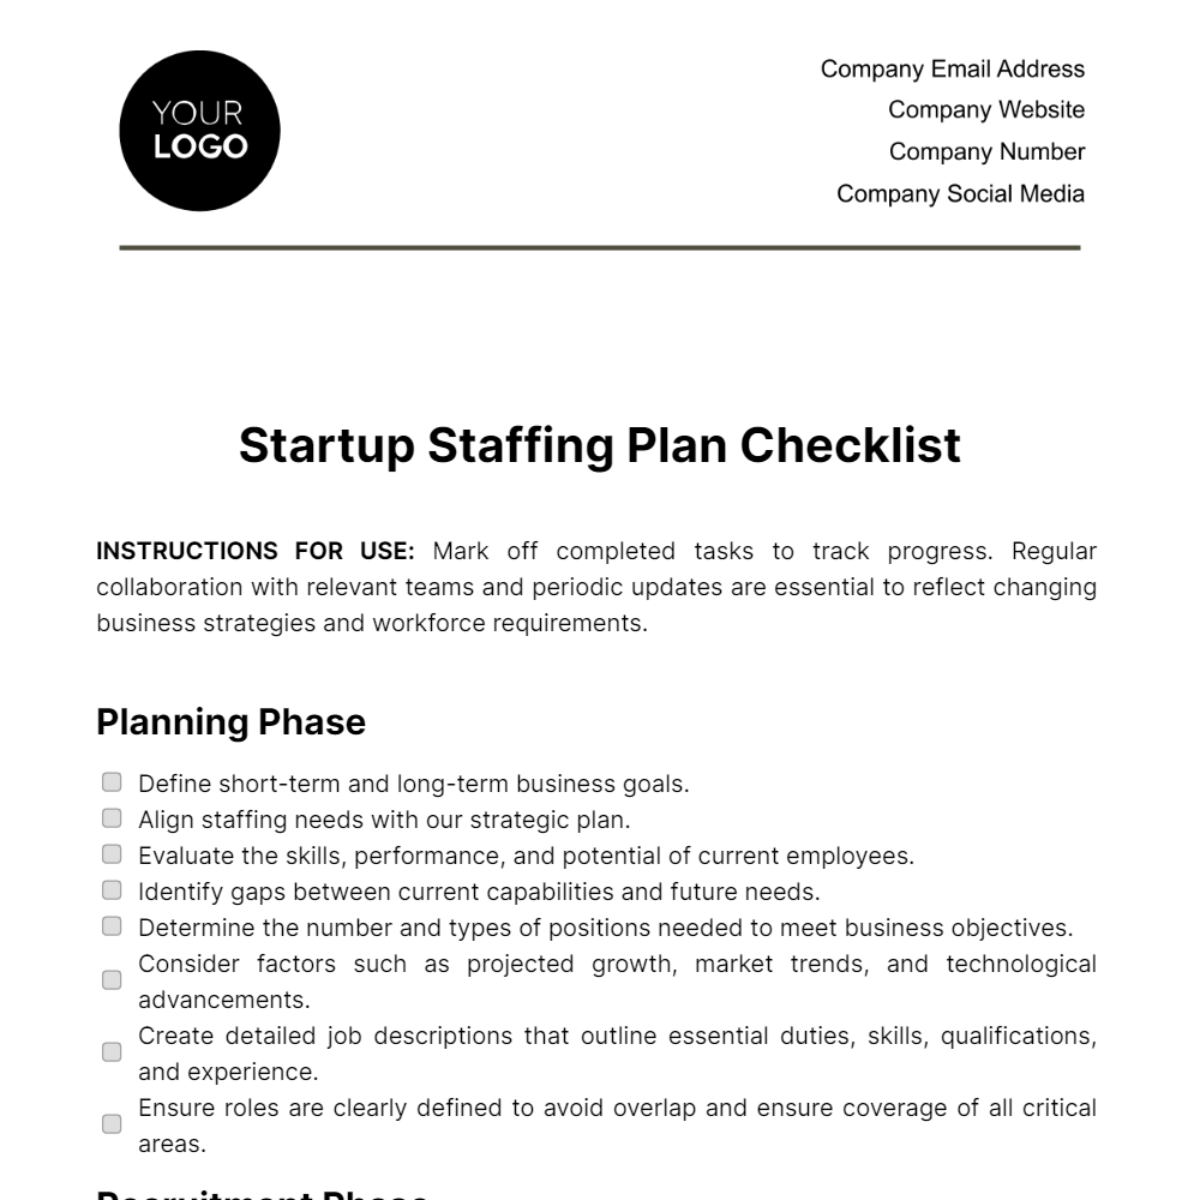 Startup Staffing Plan Checklist Template